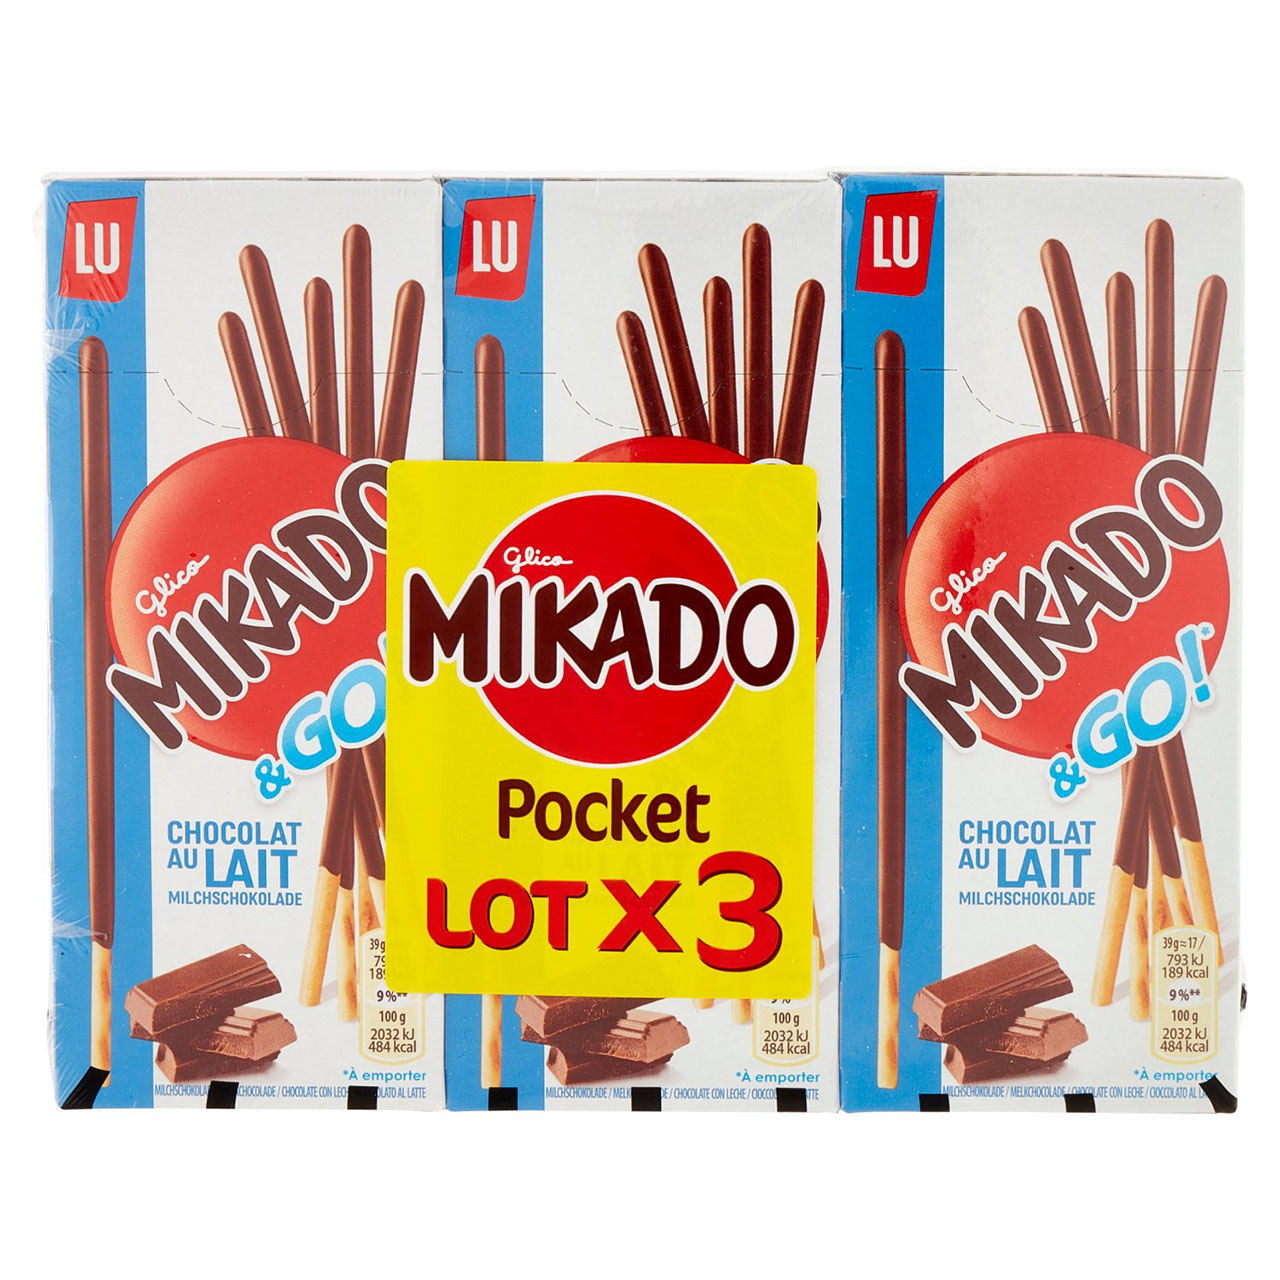 Mikado chocolate 39 g 